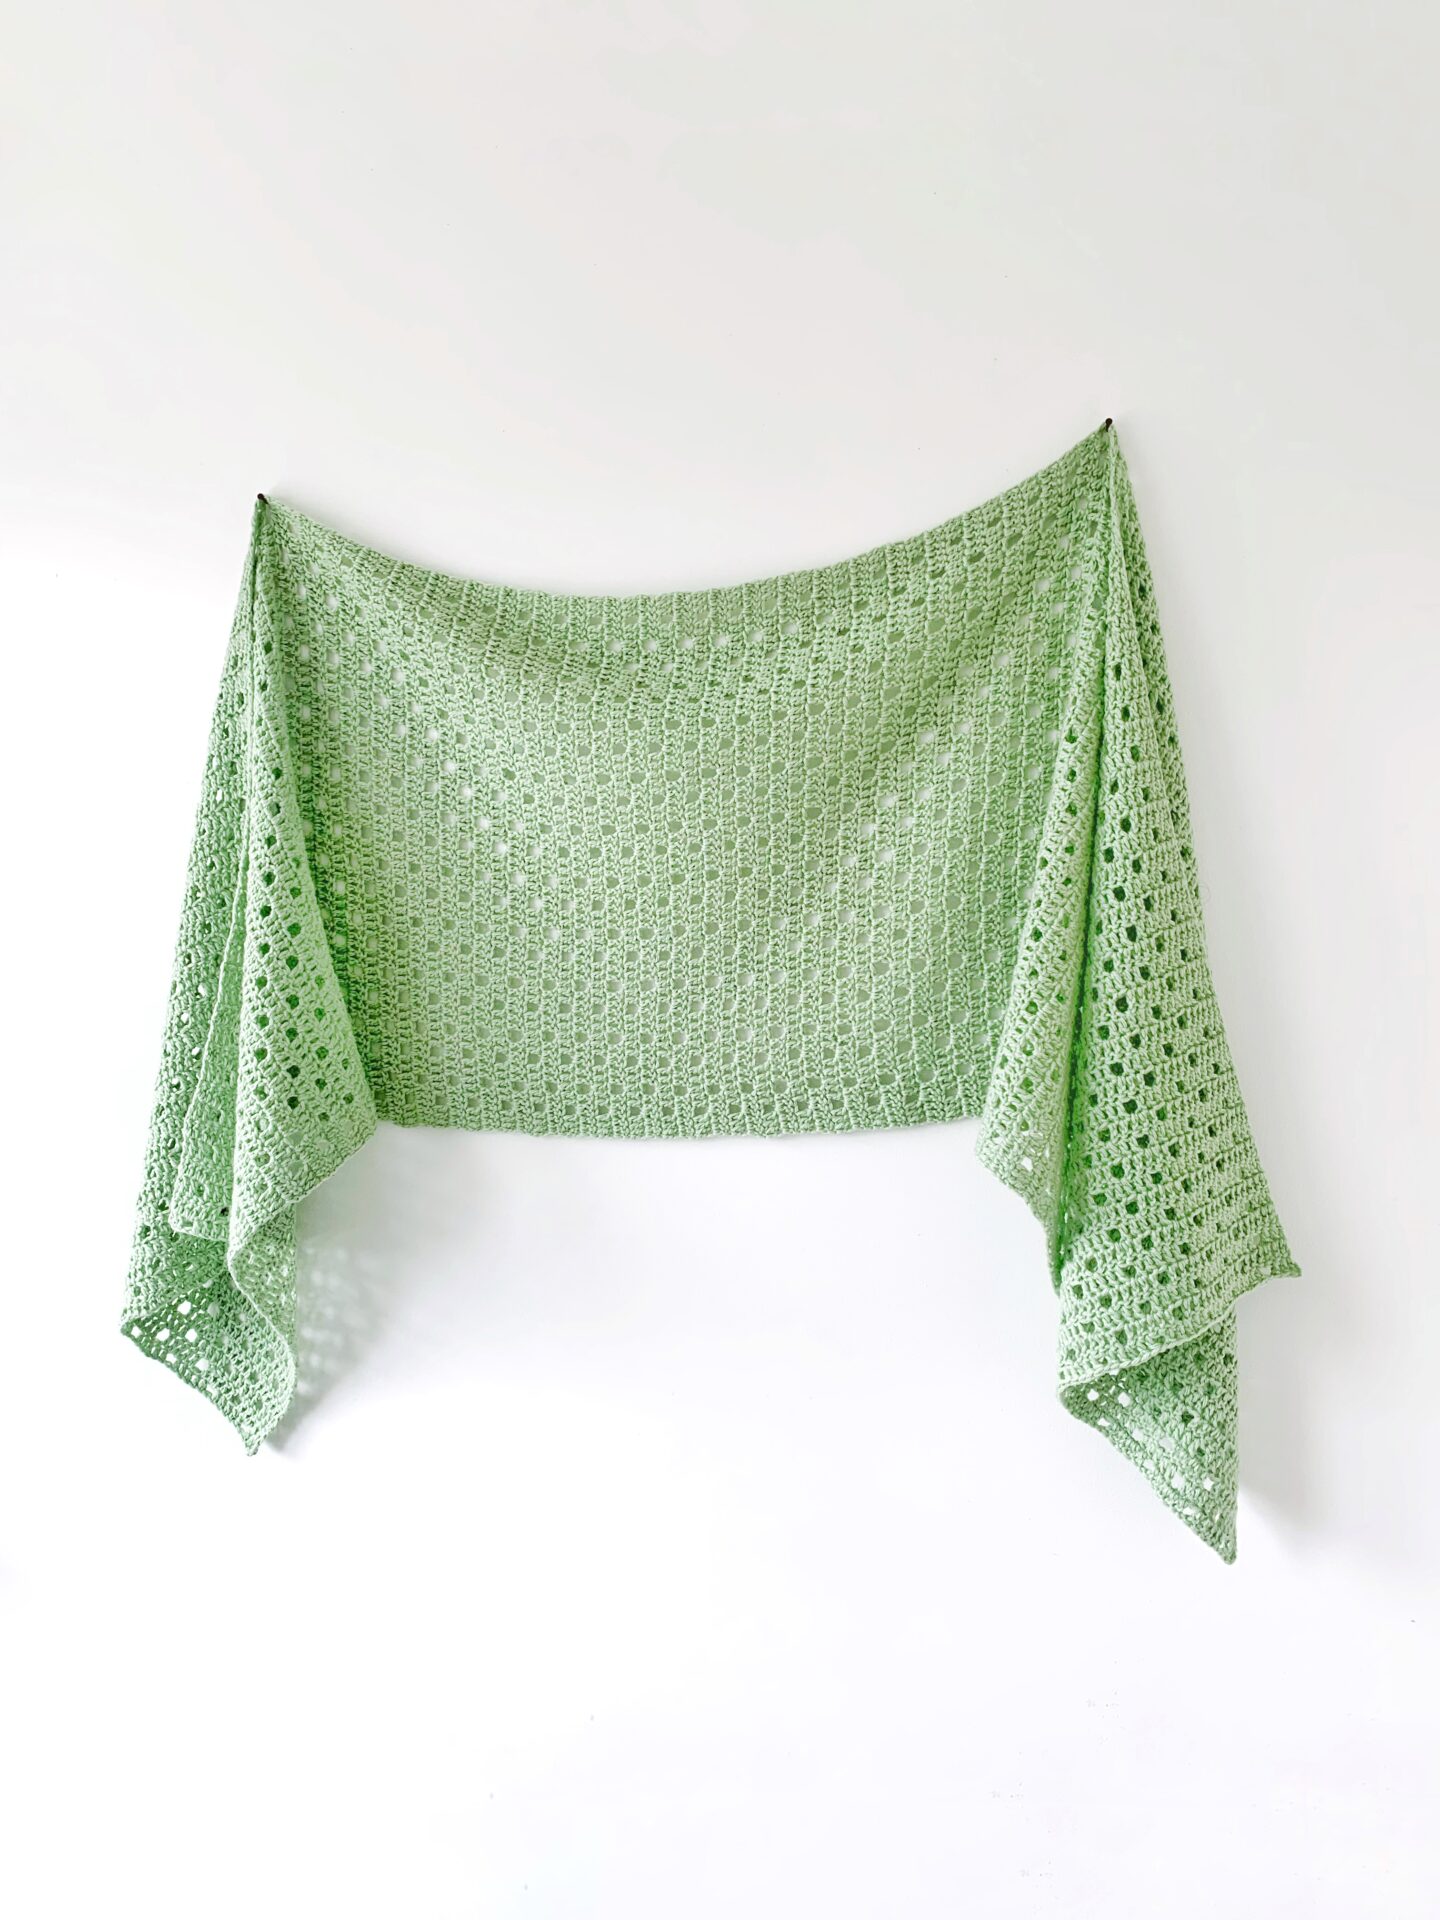 Dewdrop Sideways Shawl - Free Crochet Pattern